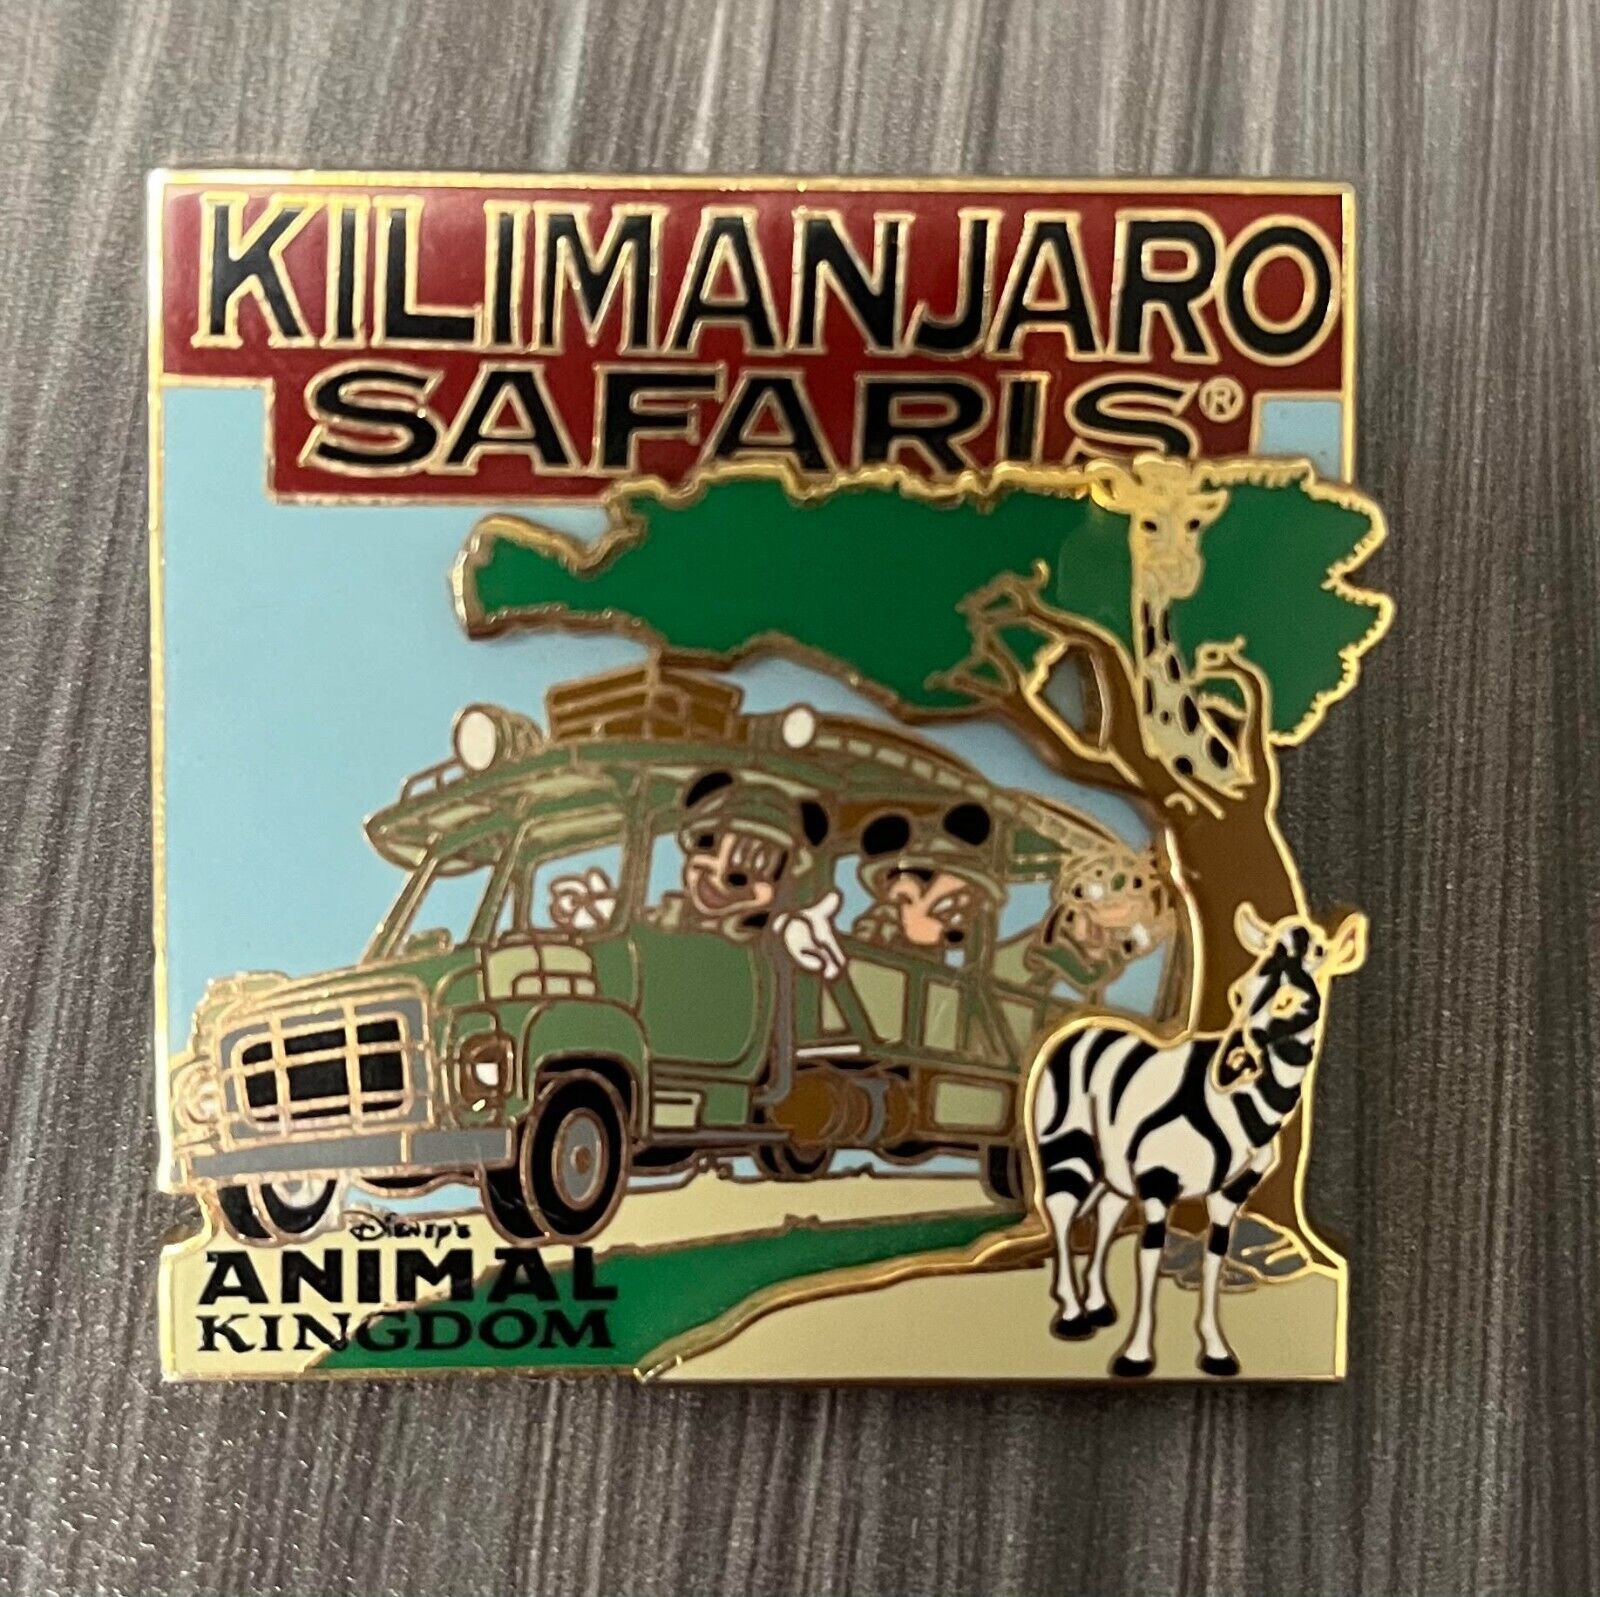 Disney Animal Kingdom Park Kilimanjaro Safaris Attraction Collector Pin 3-D